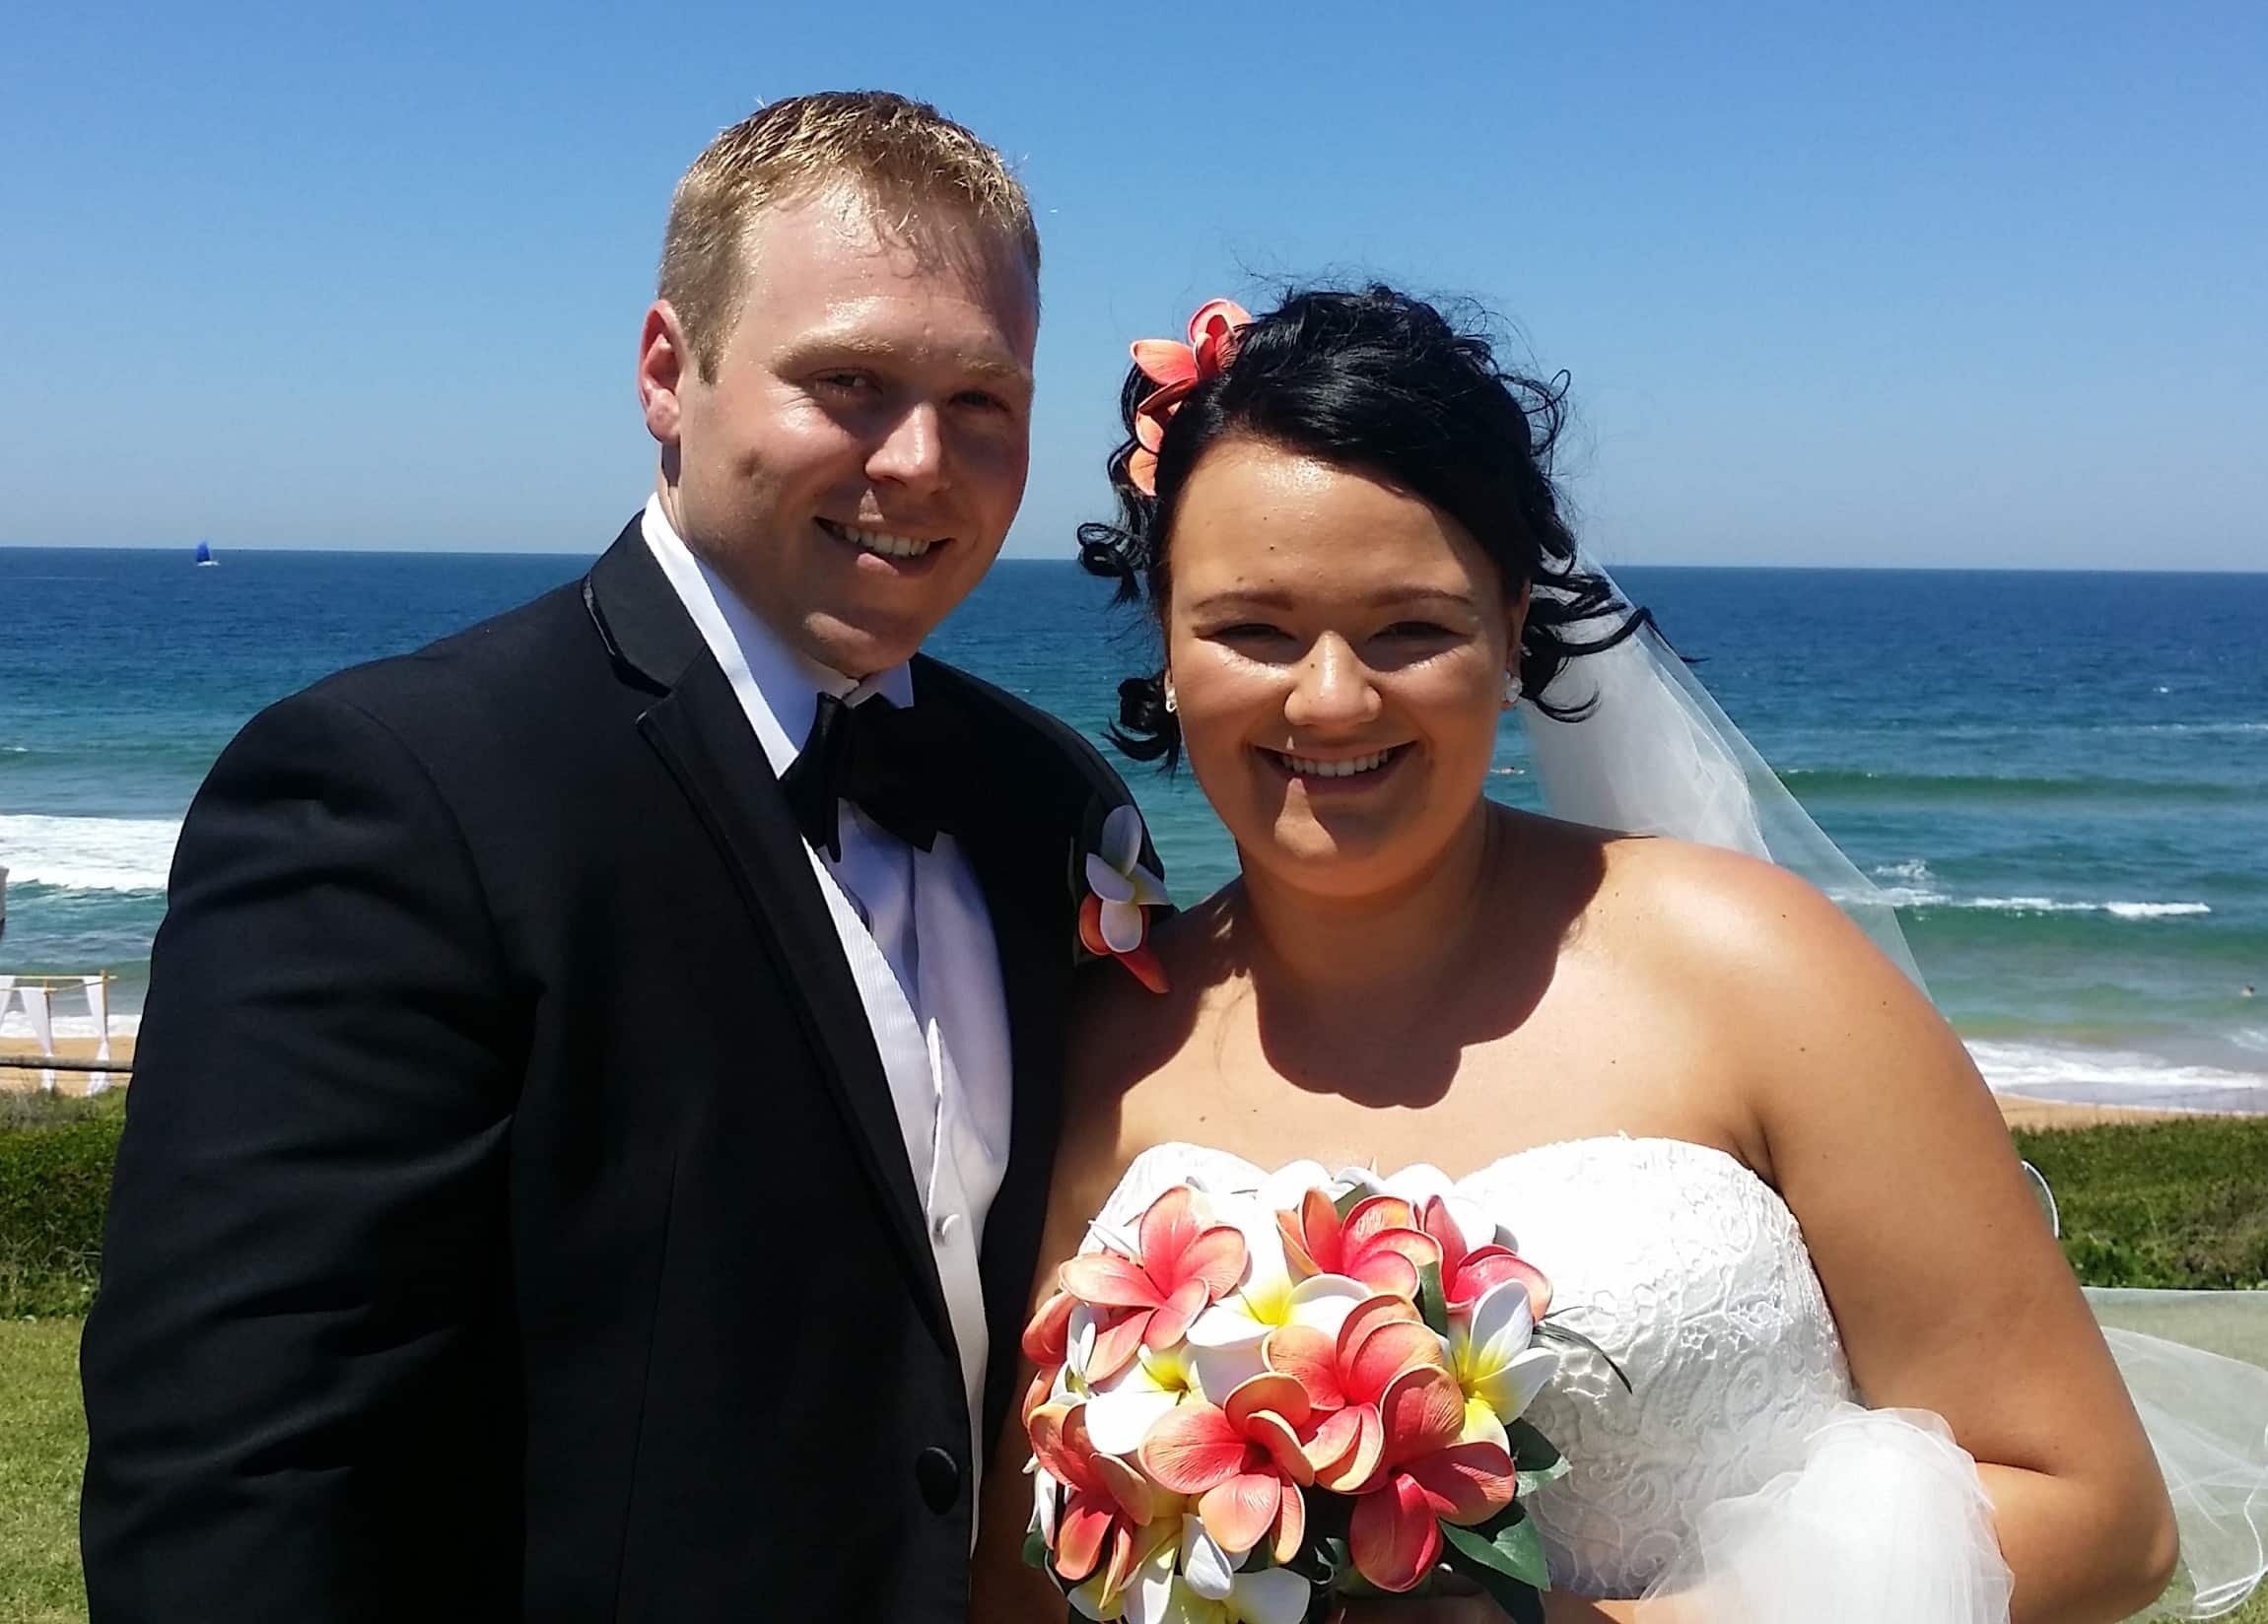 Greg & Sabrina on their wedding day - beach wedding outdoor clear blue skies